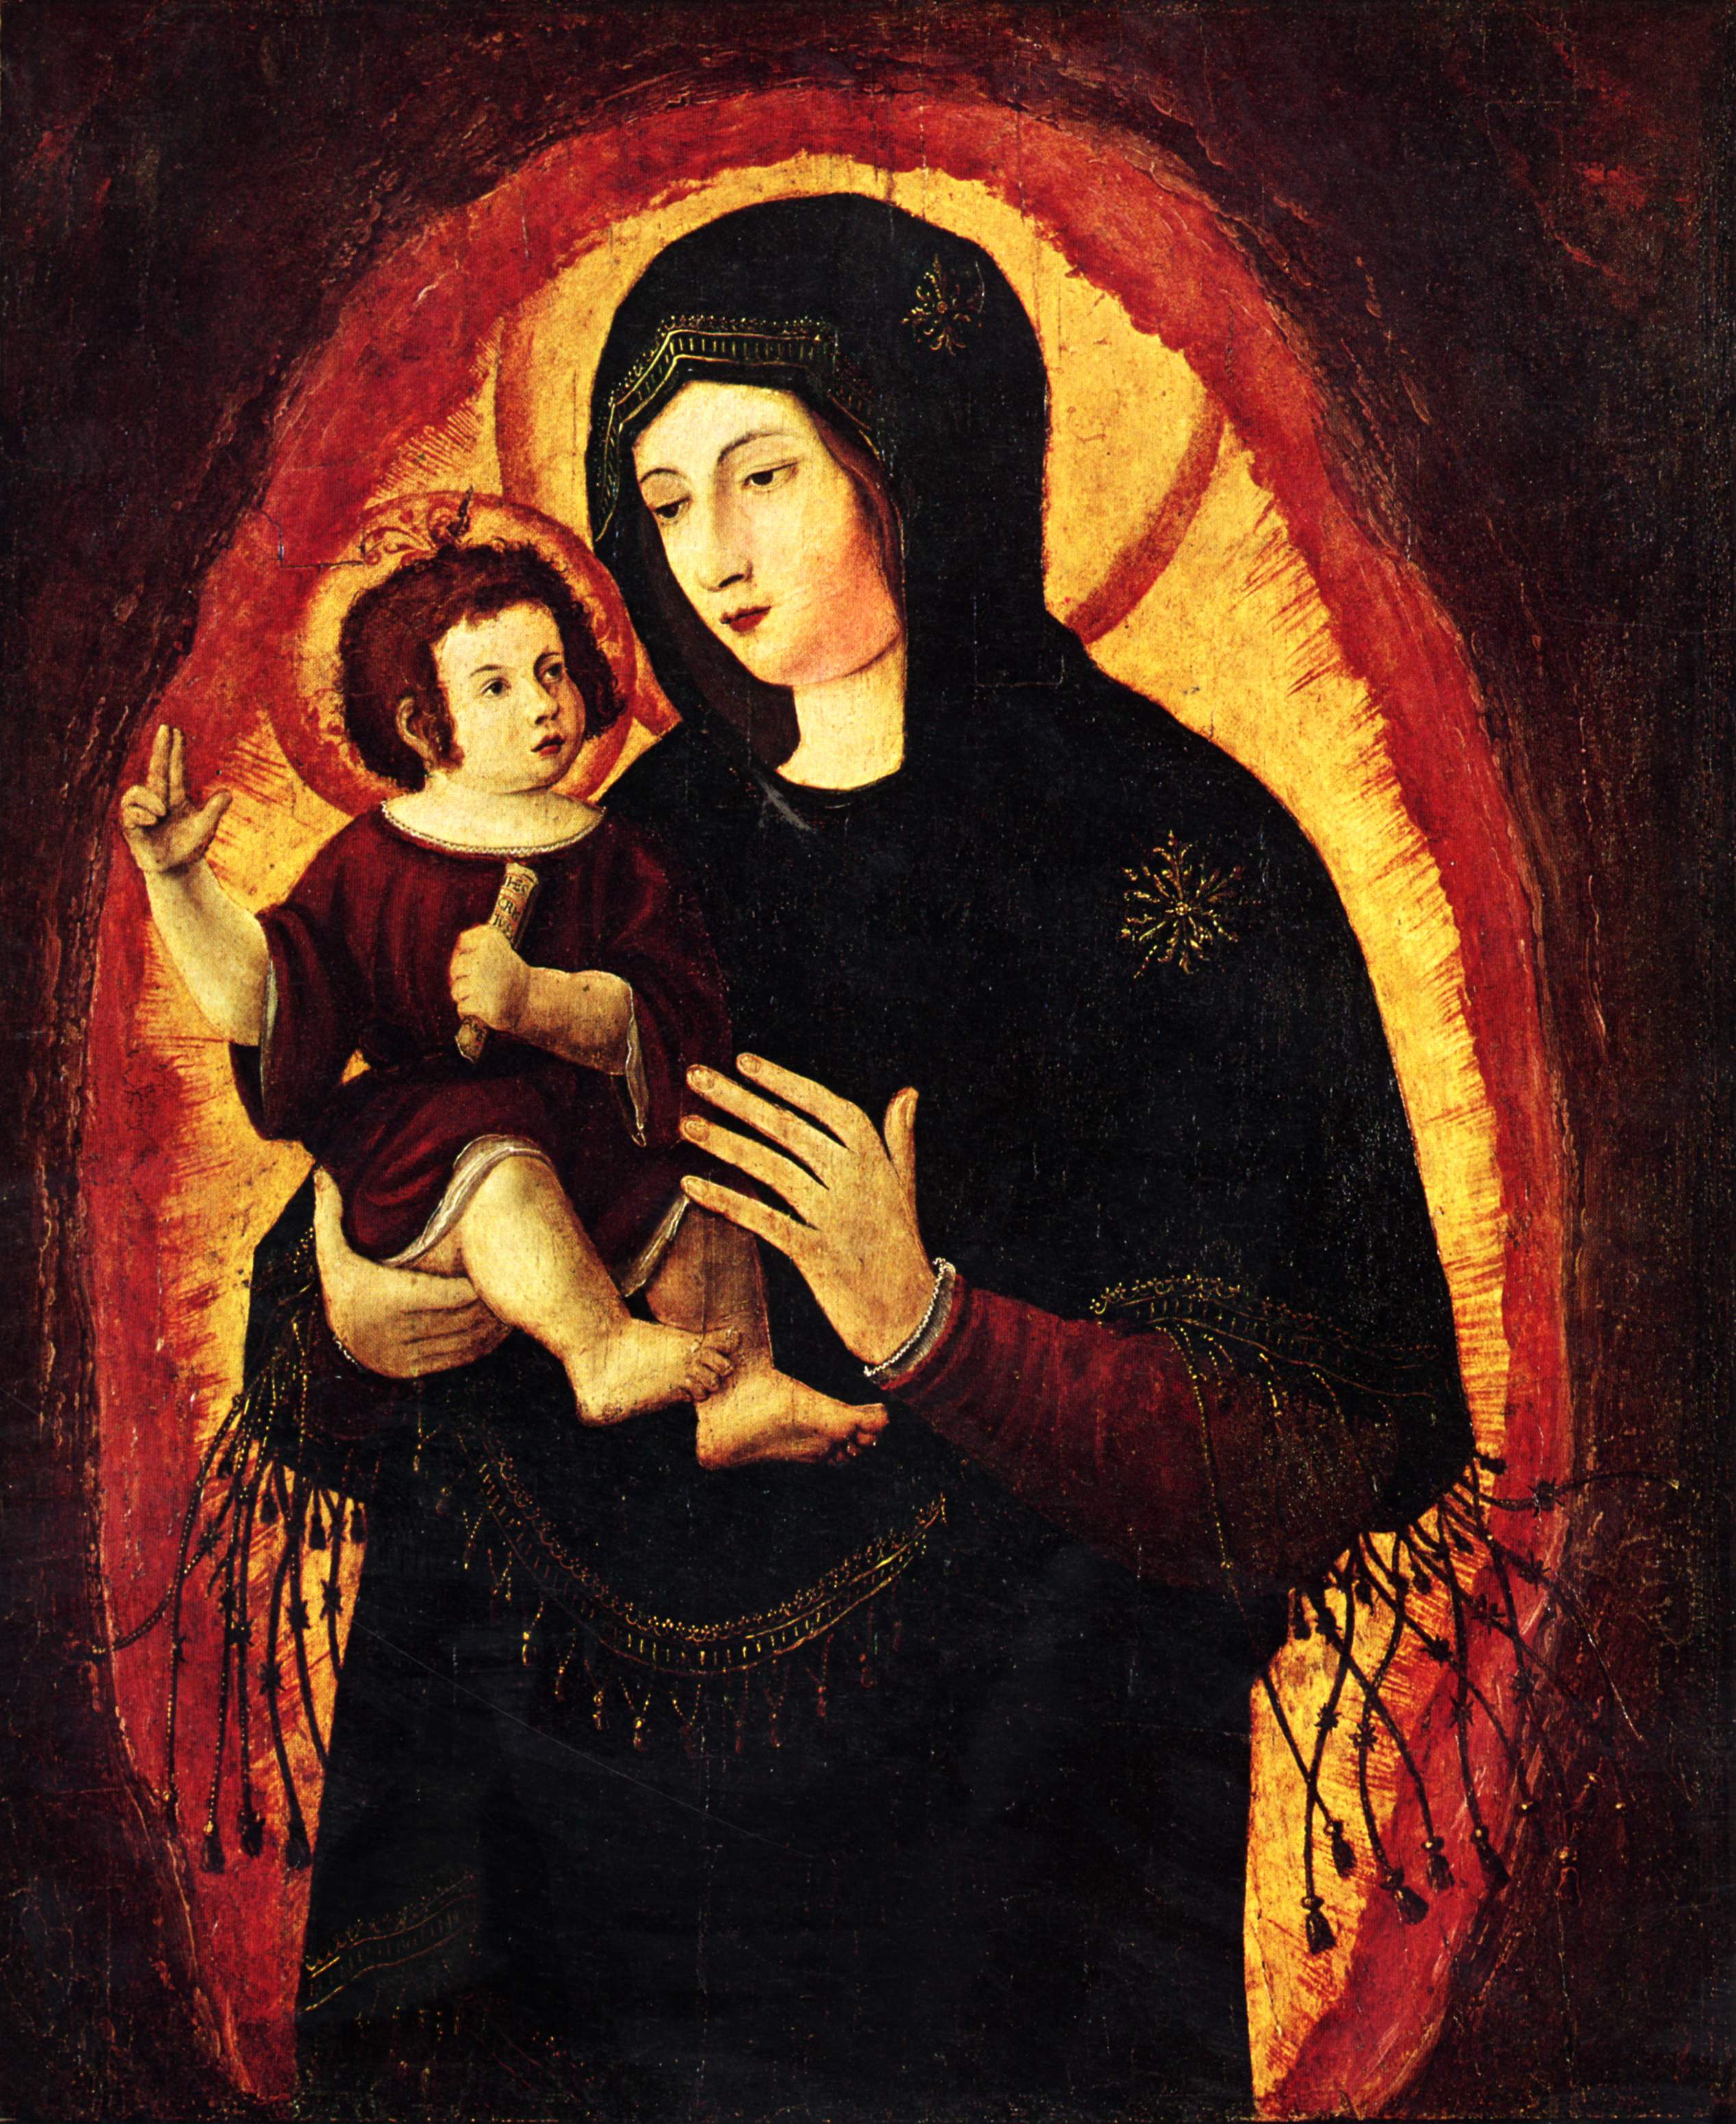 Альбрехт Альтдорфер. "Мадонна (Прекрасная Мария из Регенсбурга)". 1519-1522.